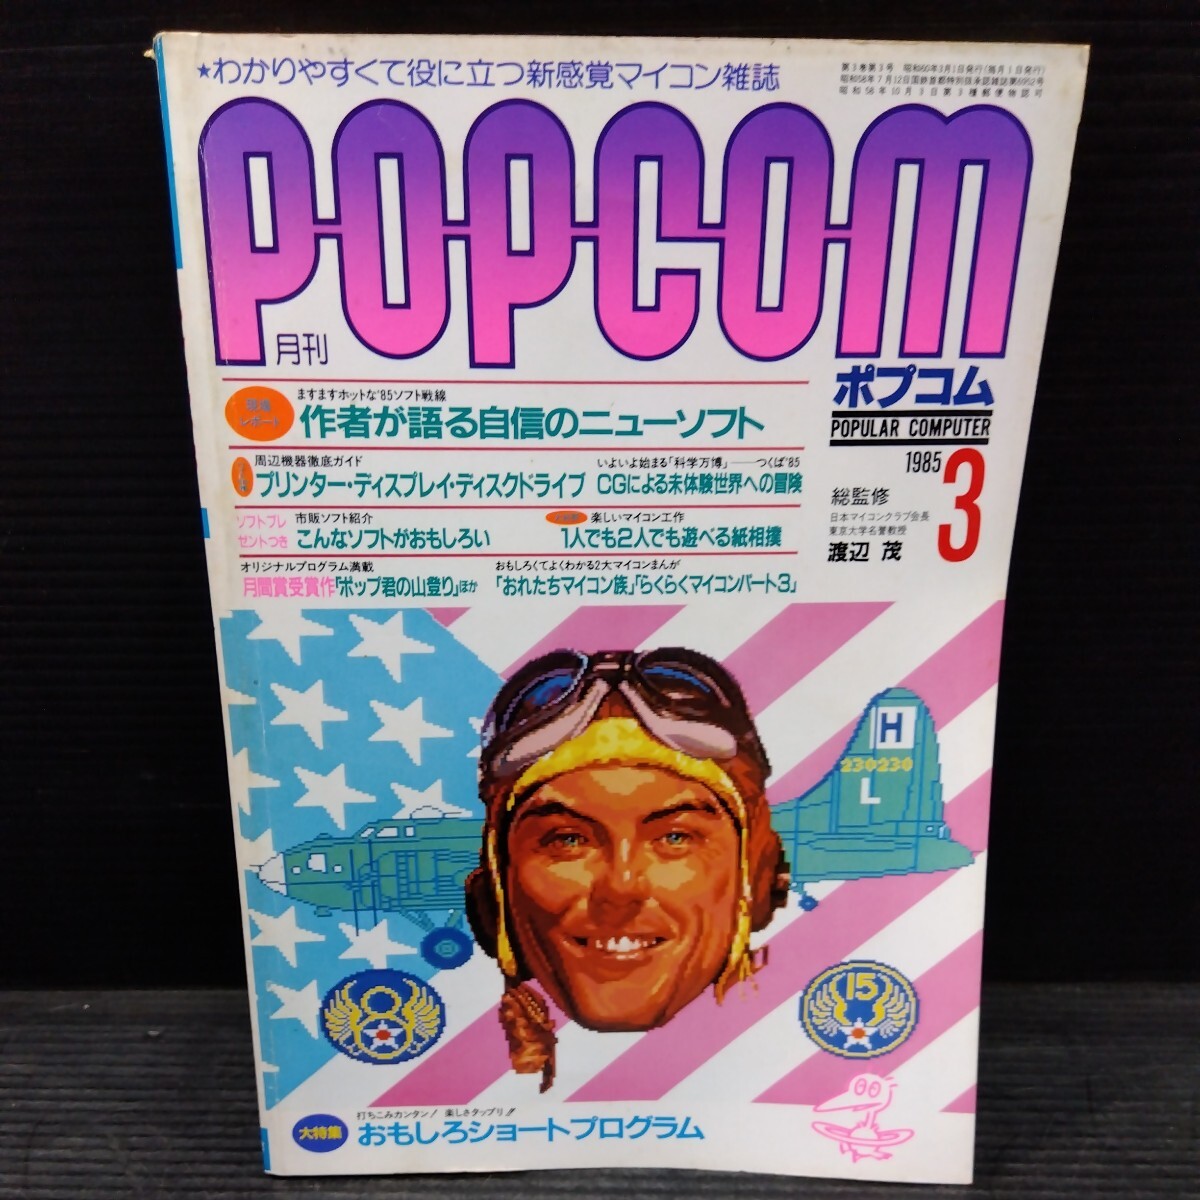  ежемесячный pop com 1985 год 3 месяц номер POPCOM microcomputer журнал PC относящийся книга@ компьютернные игры персональный компьютер графика soft CG дисковод program 